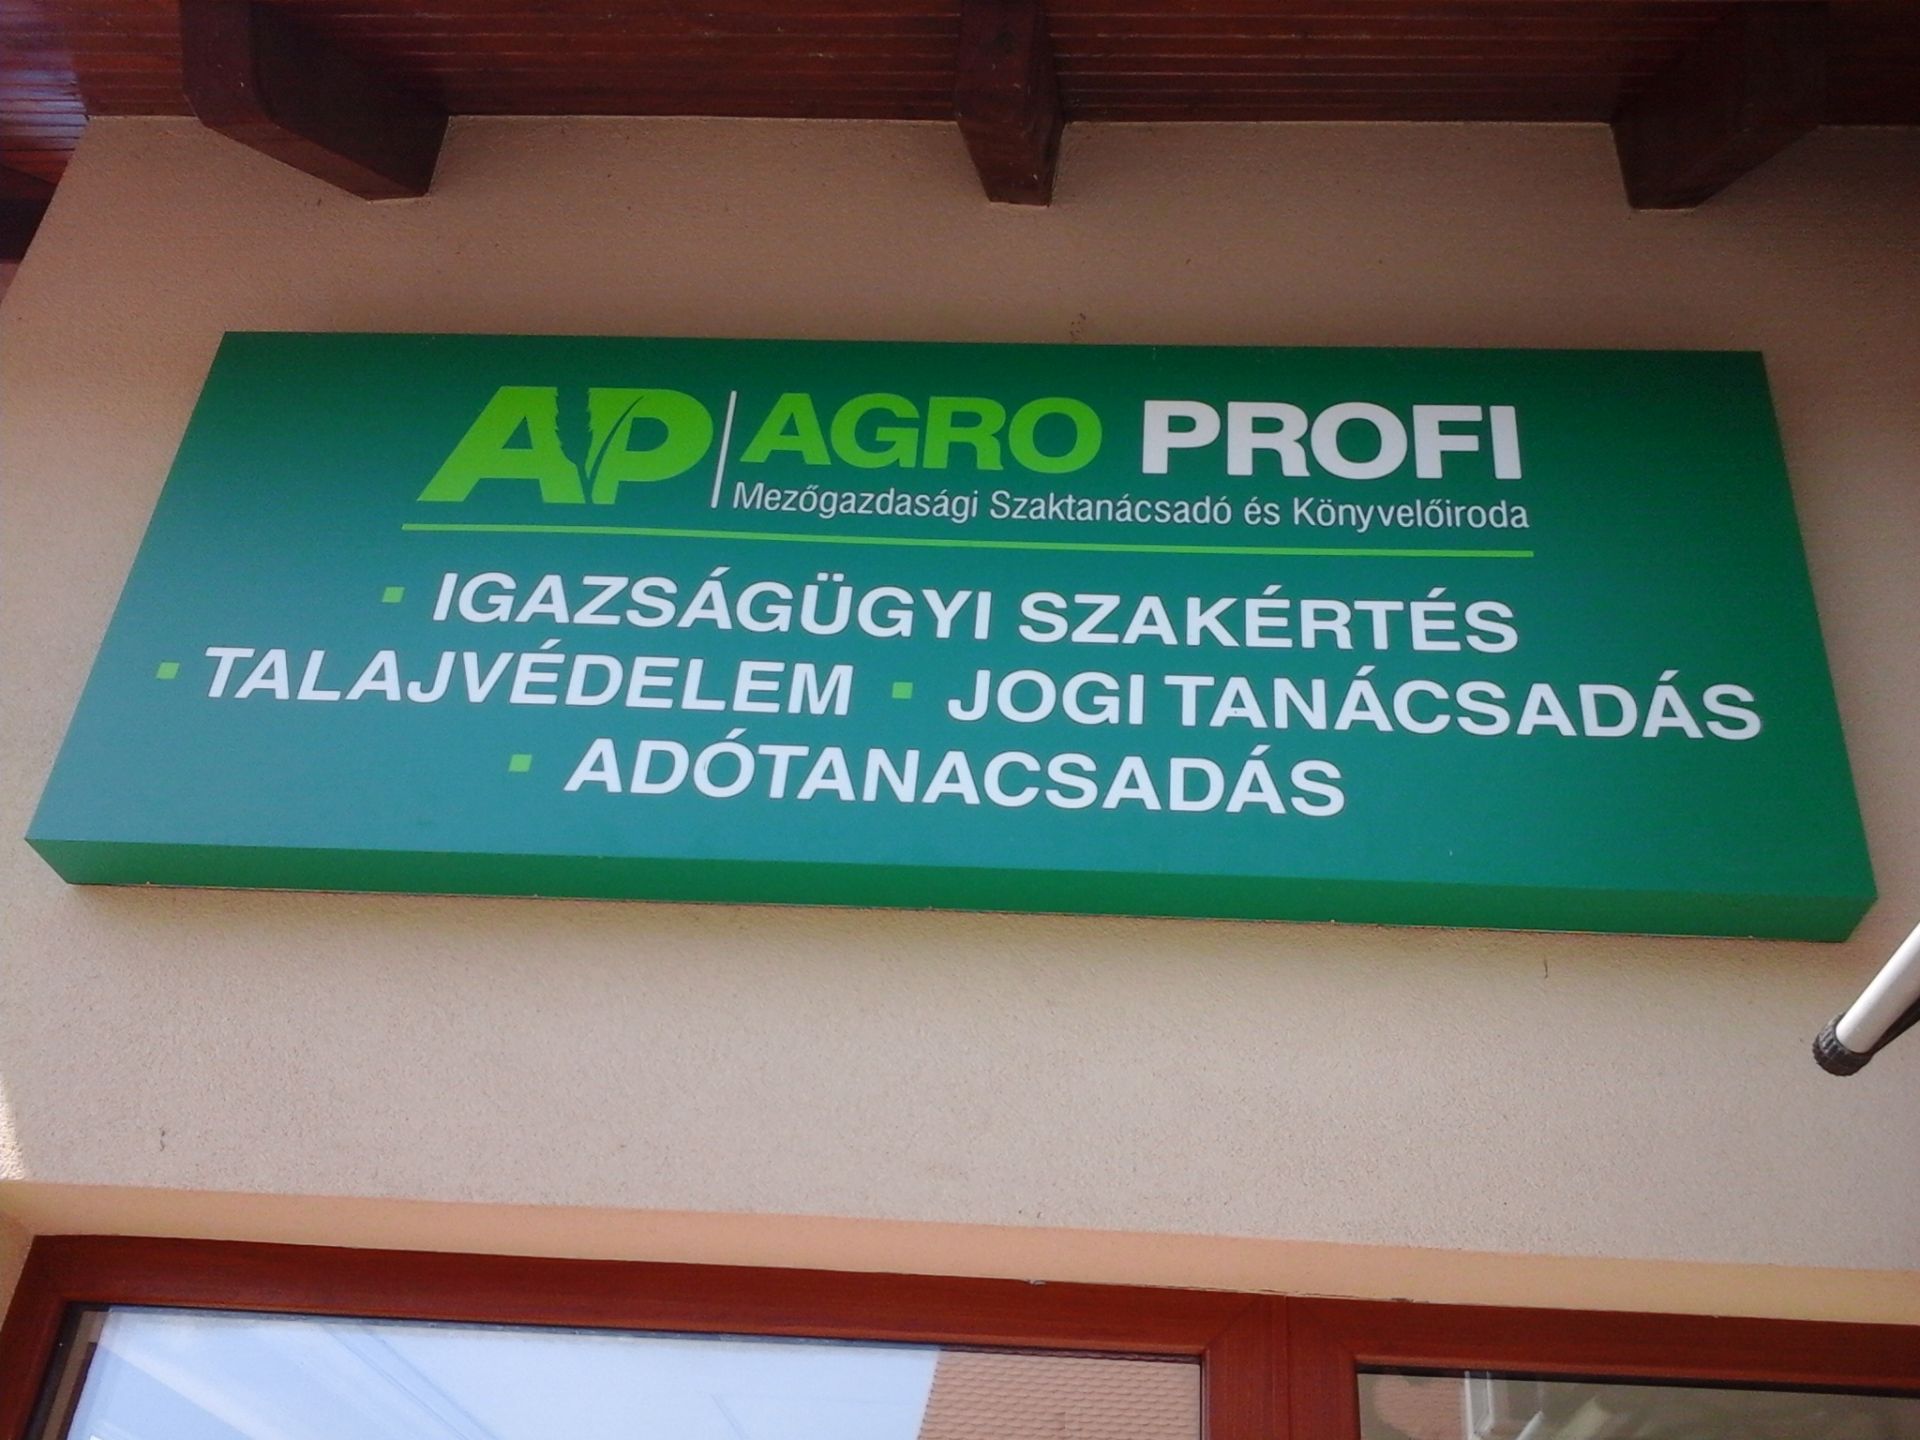 Images AP AGRO PROFI  Dr. Kovács Tamás mezőgazdasági szaktanácsadó, szakértő